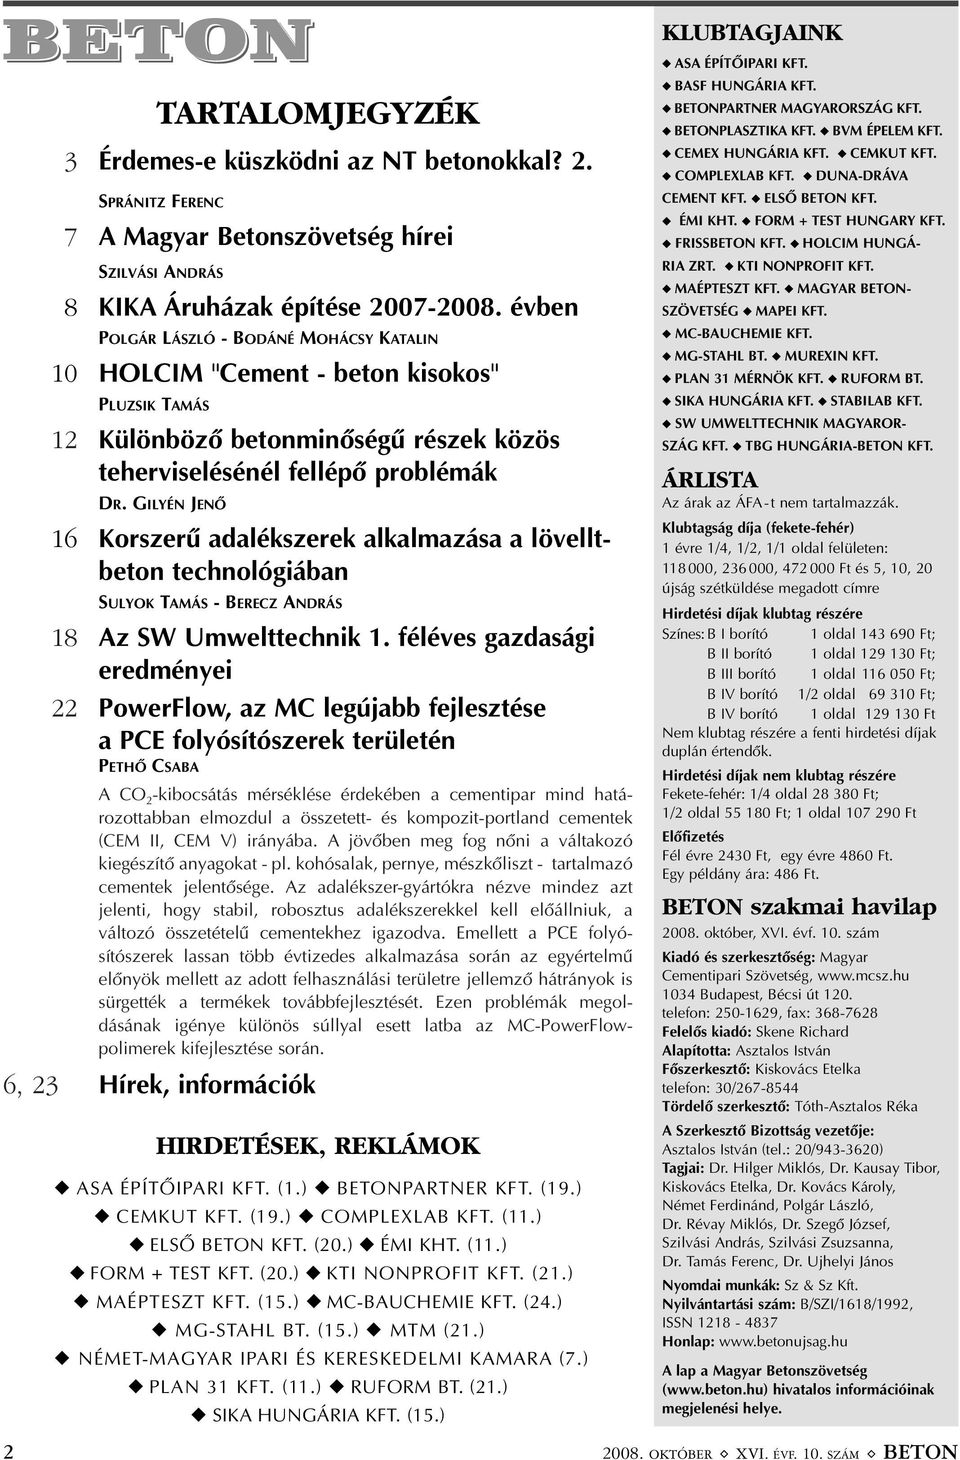 GILYÉN JENÕ 16 Korszerû adalékszerek alkalmazása a lövelltbeton technológiában SULYOK TAMÁS - BERECZ ANDRÁS 18 Az SW Umwelttechnik 1.